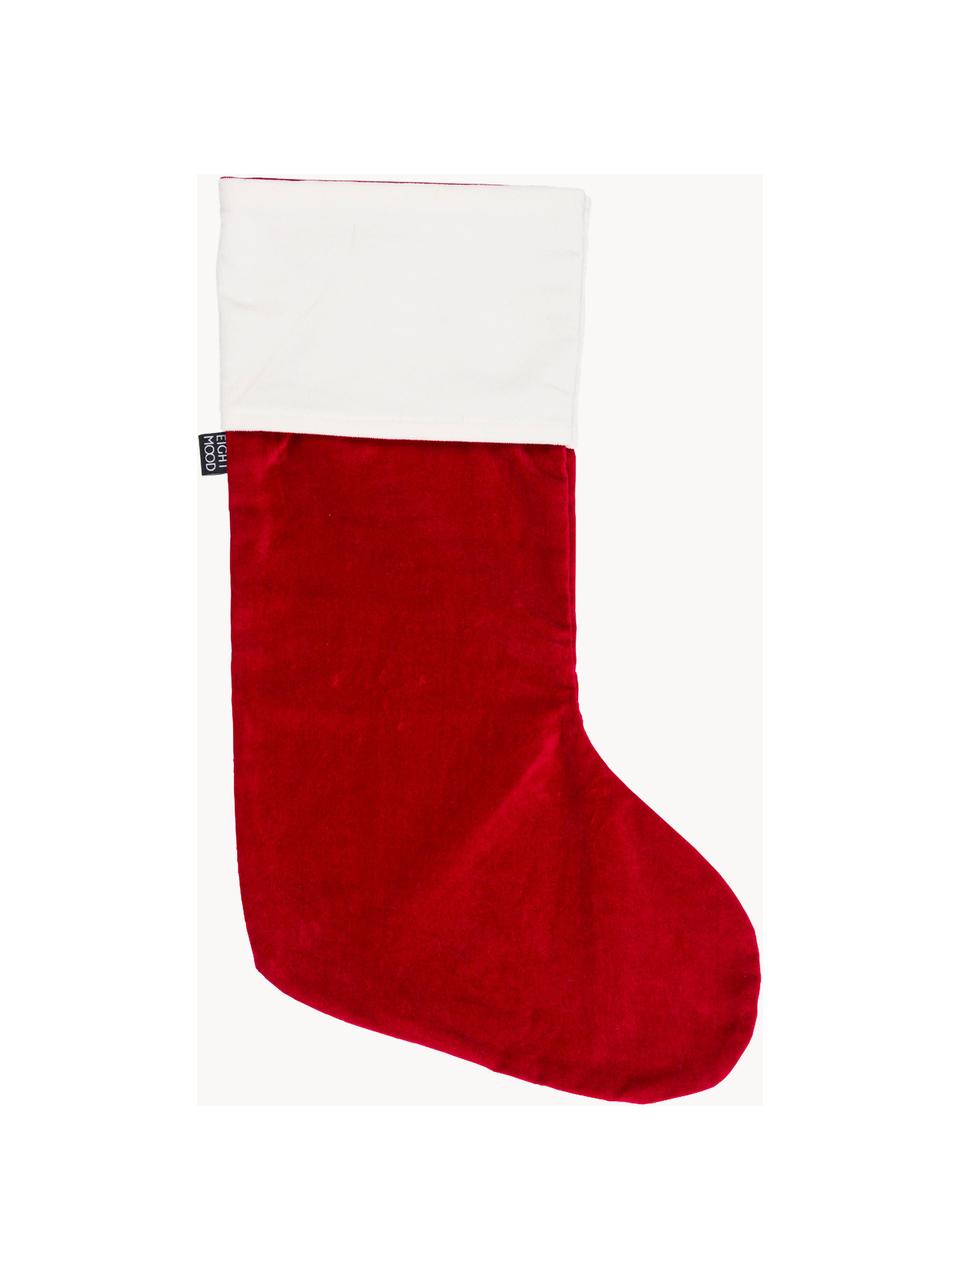 Vánoční ponožka Veronica, V 45 cm, Bavlna, Červená, bílá, Š 25 cm, V 45 cm